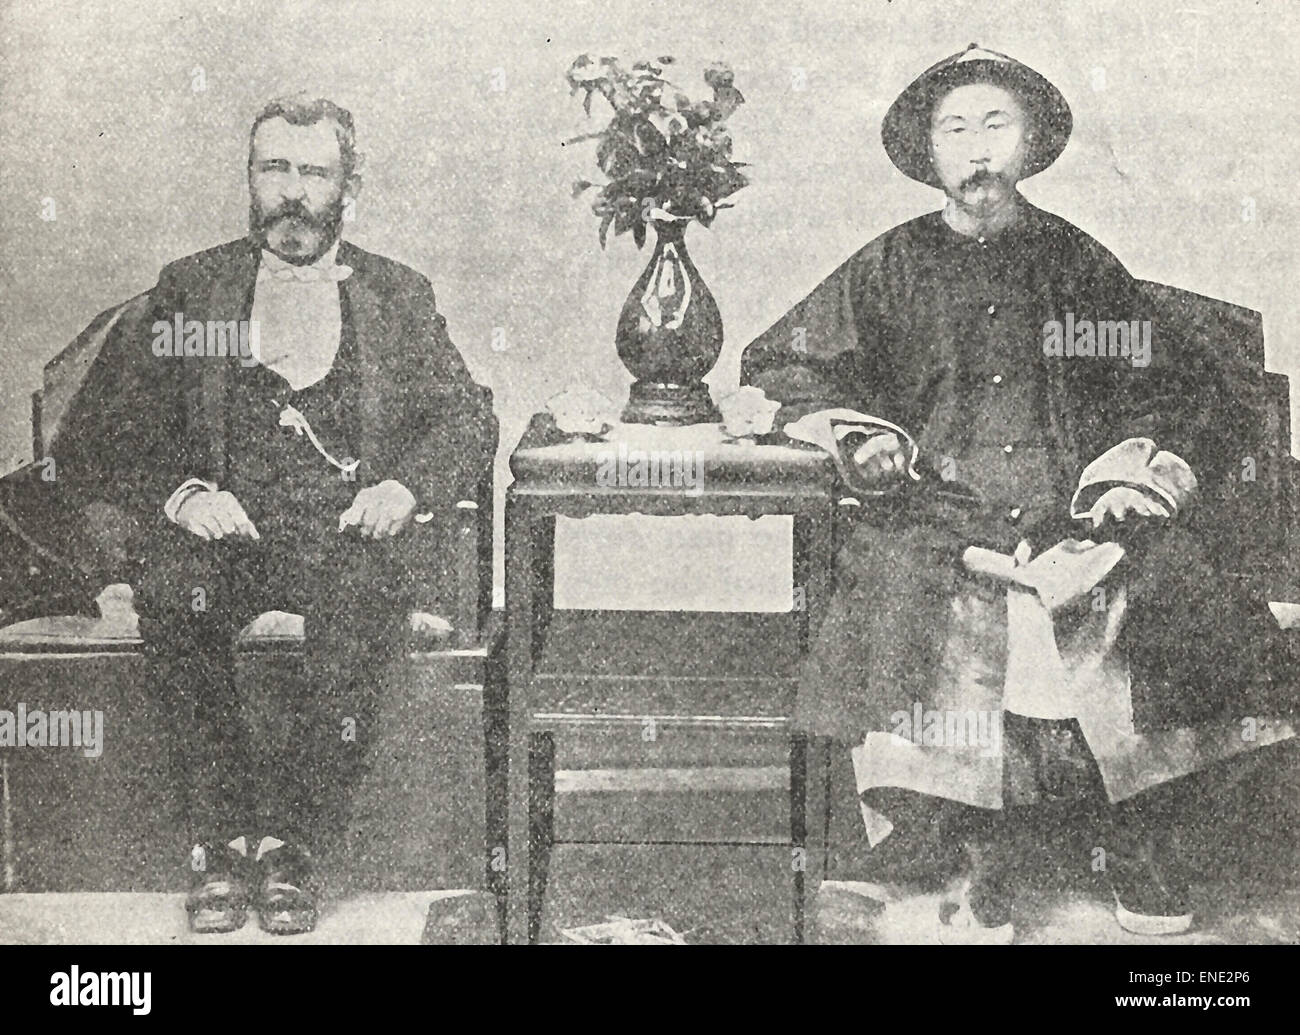 General Grant and Li Hung Chang, Viceroy of China, 1879 Stock Photo